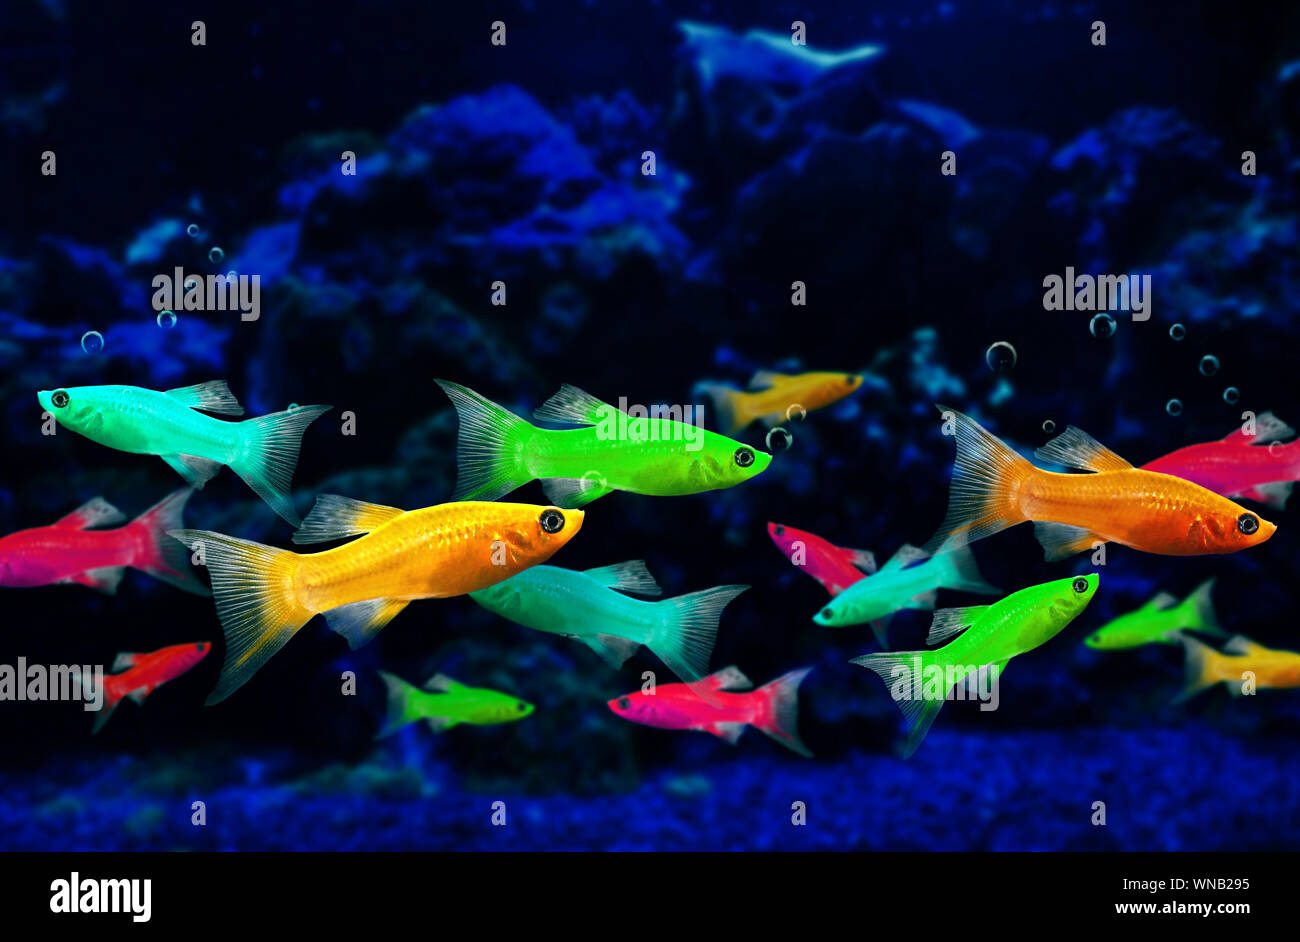 Glofish, Gentechnisch veränderte Fische in einem Aquarium Leuchtstoffröhre Stockfoto